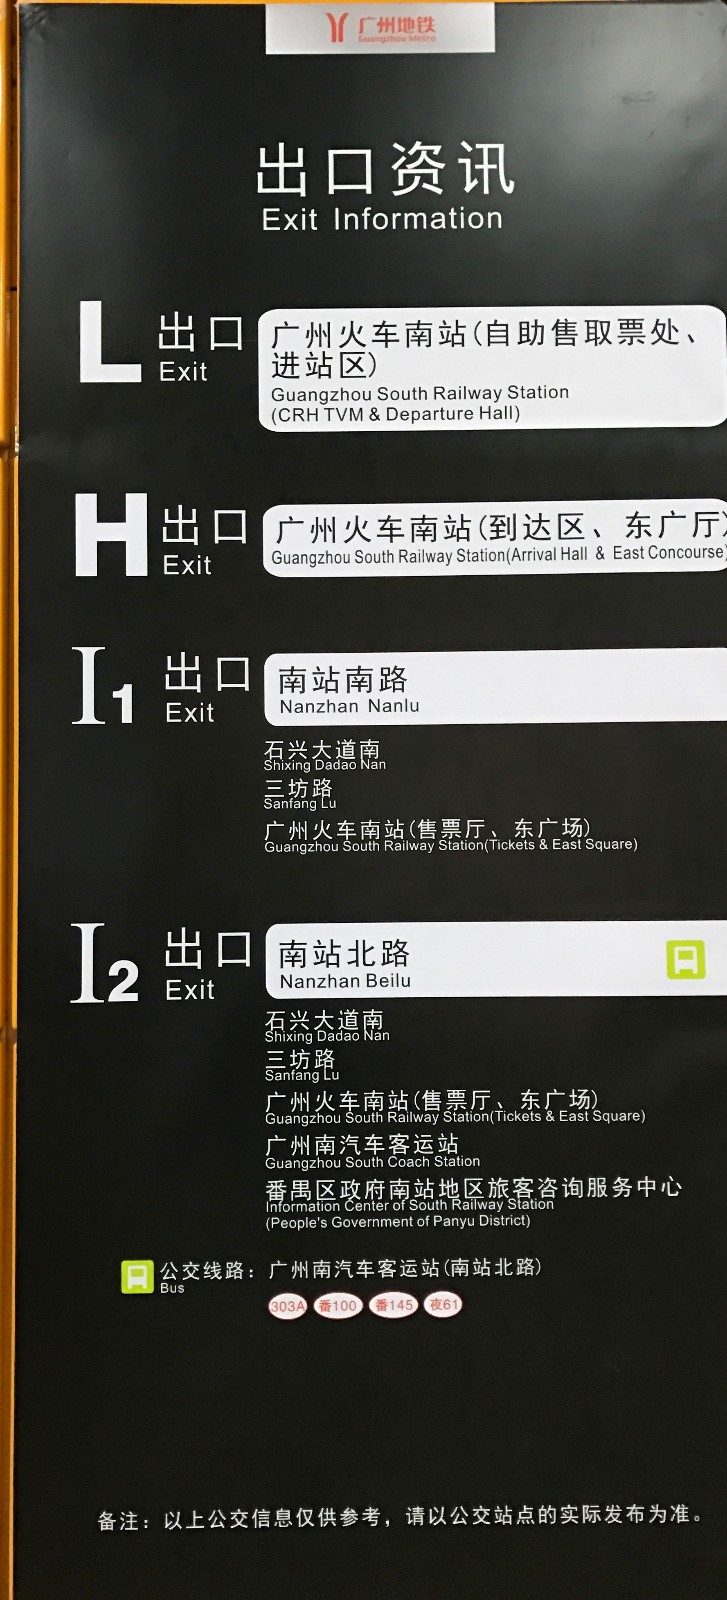 在广州南站怎么坐高铁我的意思是在地铁哪个出口然后到哪里坐高铁（广州南地铁站哪个出口是高铁站）